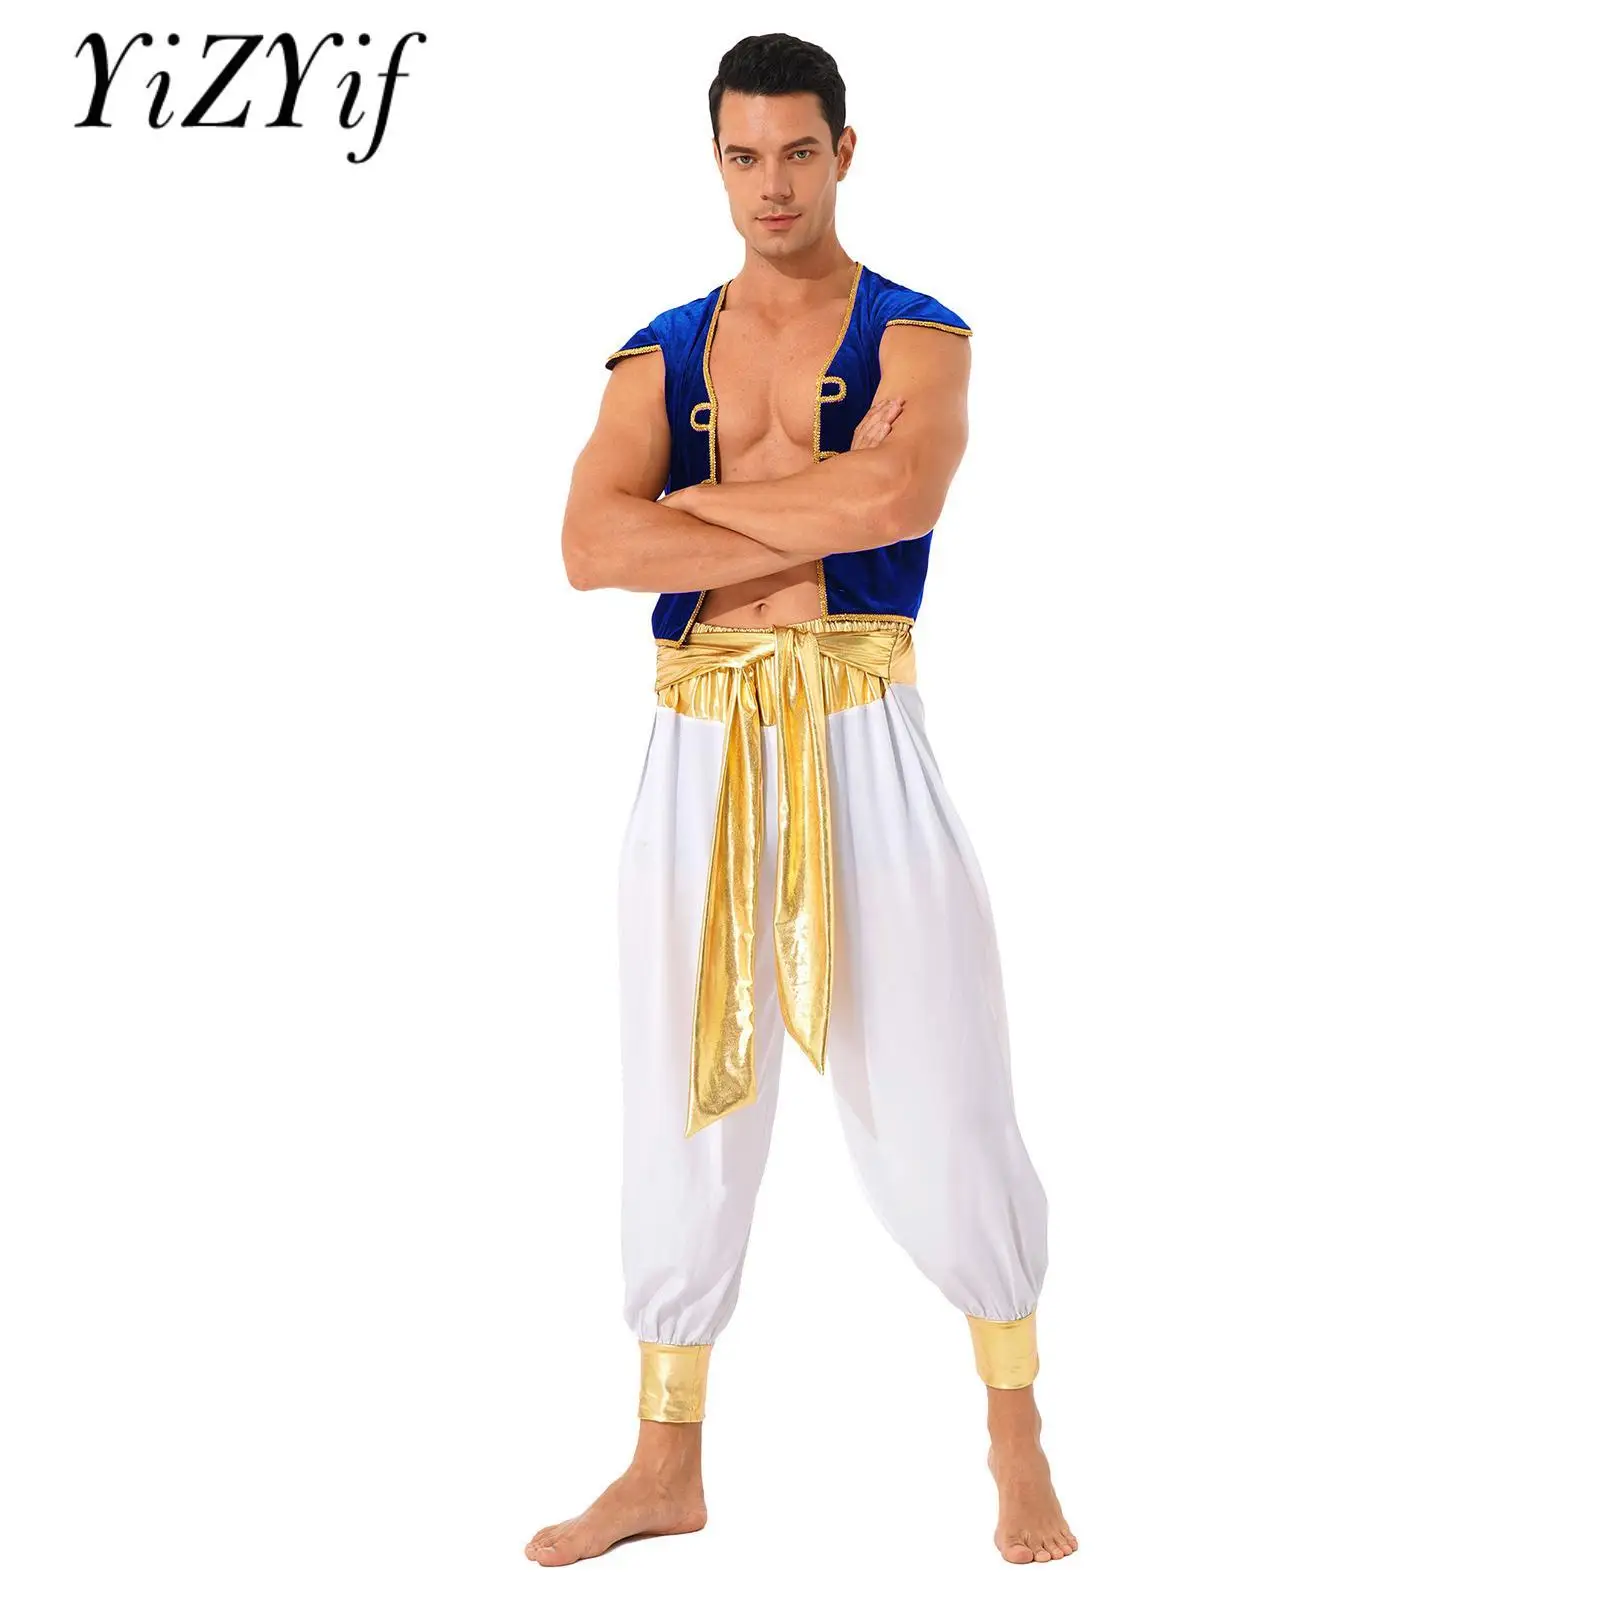 

Мужской костюм для косплея арабского принца, бархатный жилет и брюки, набор одежды для ролевых игр на Хэллоуин, Рождество